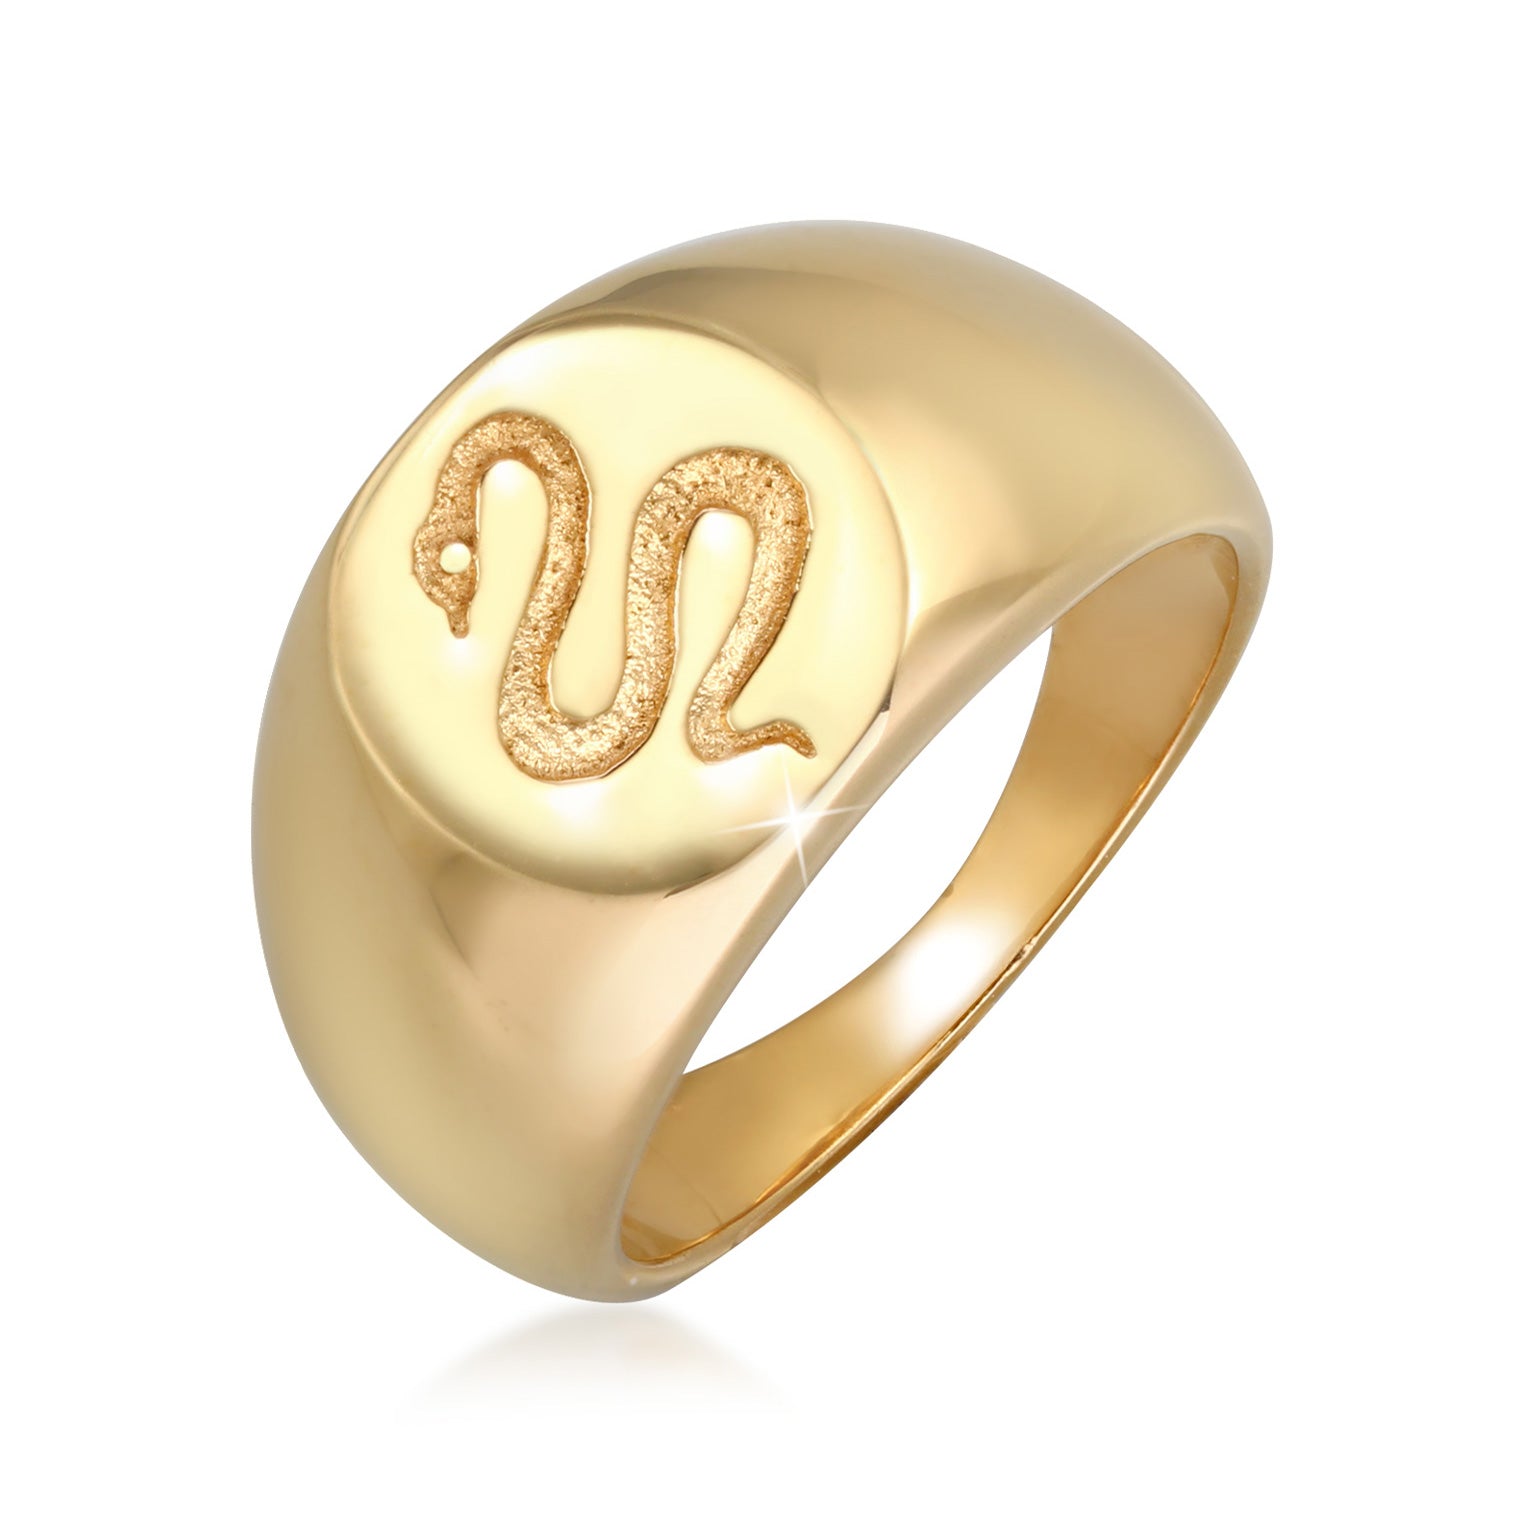 Ringe aus Silber oder Gold | bei Elli kaufen | TOP Auswahl – Seite 10 –  Elli Jewelry